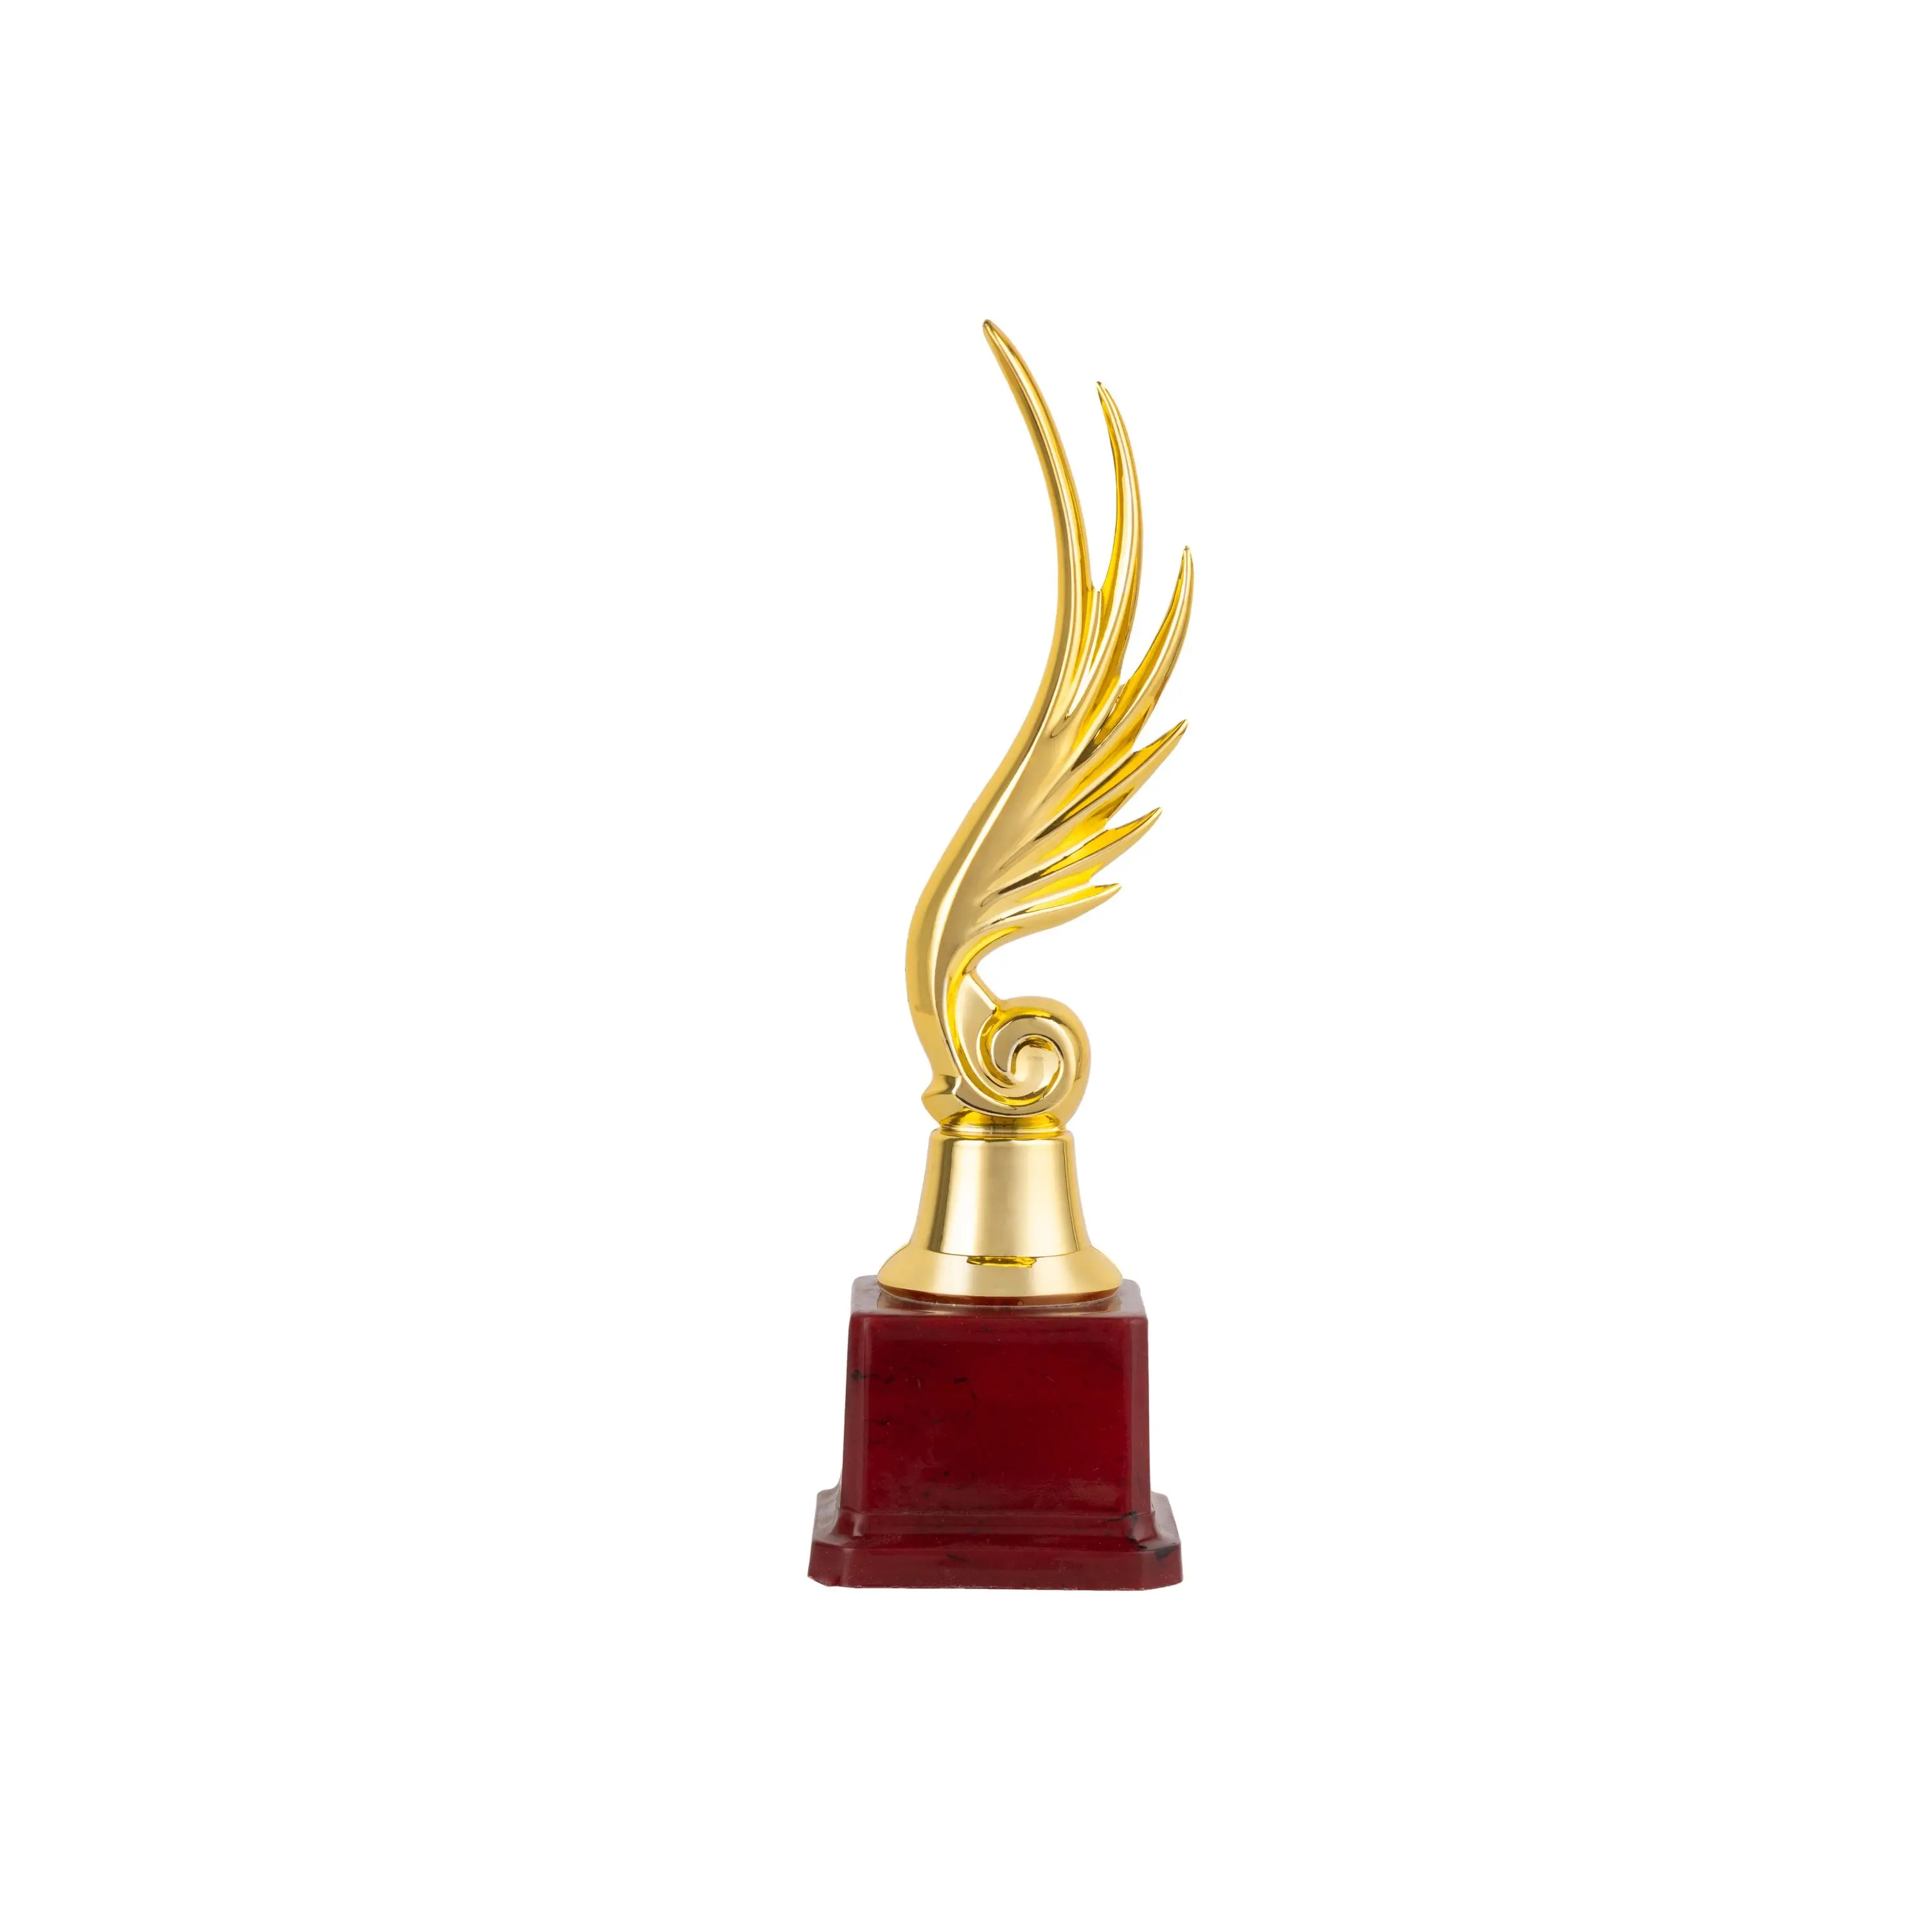 Escultura de trofeo de diseño americano, modelo de aluminio fundido para decoración, tamaño ideal recubierto de oro y negro, decoración del hogar